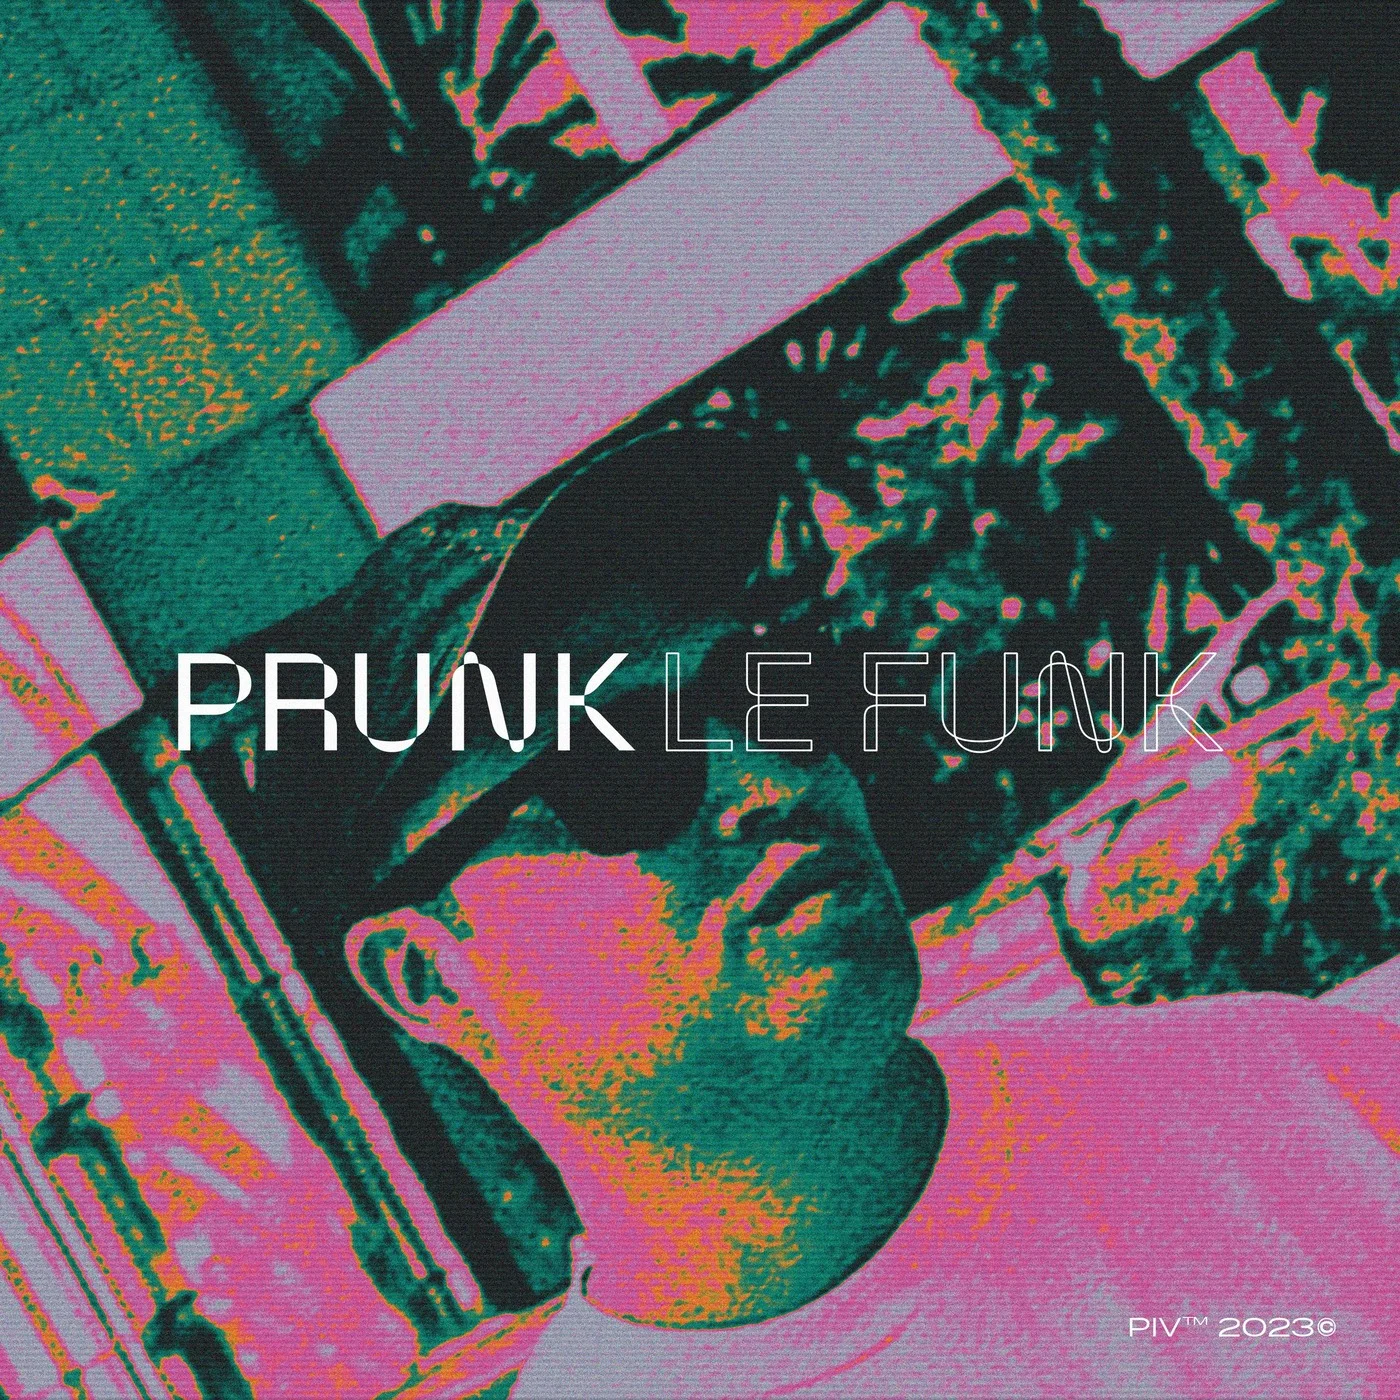 Prunk - Mushroom Jazz (Original Mix)